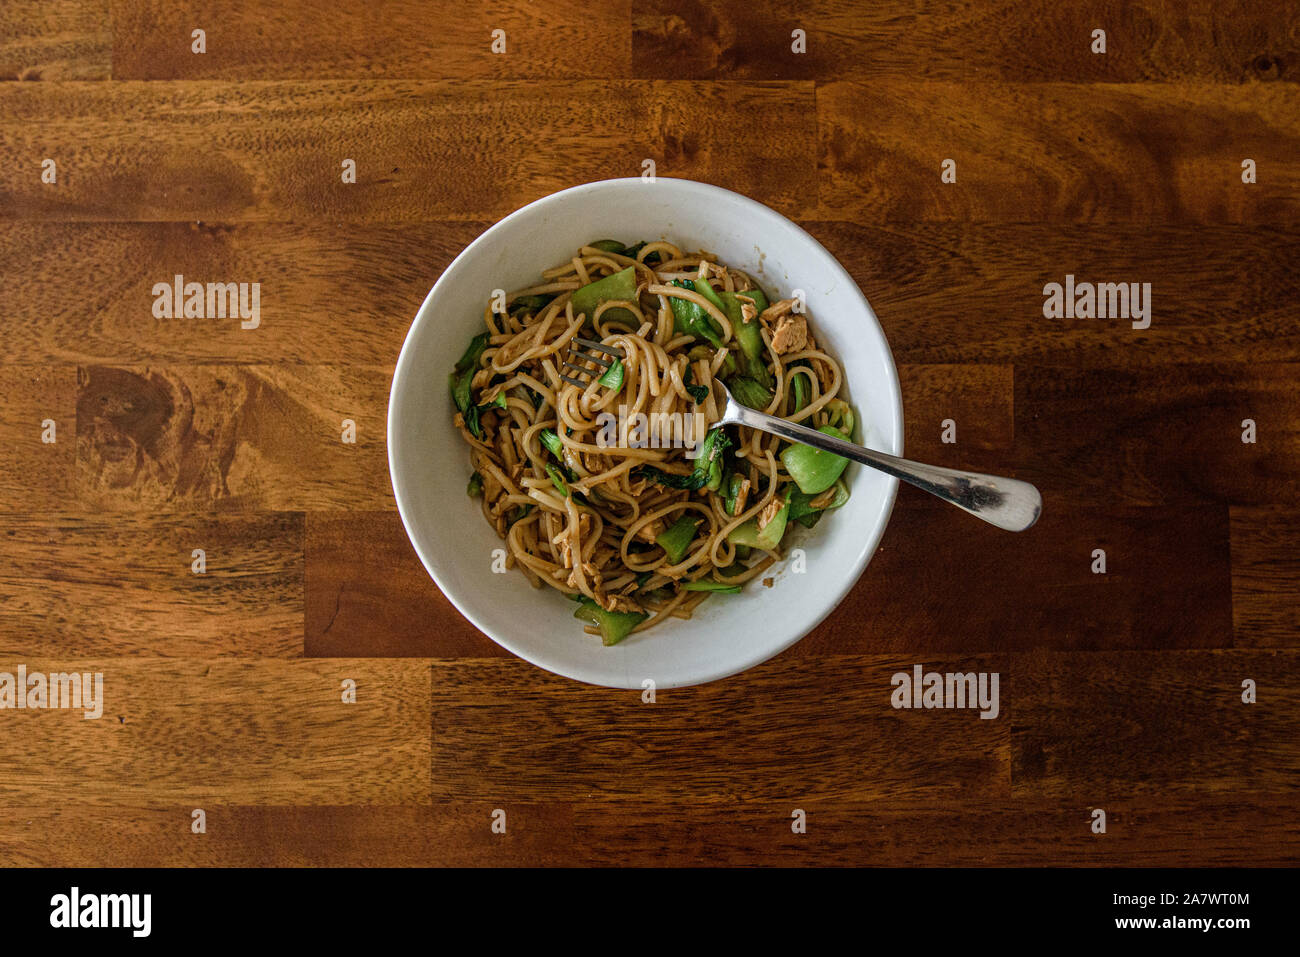 White ciotola riempita con noodle/piatto vegetariano e la forcella visto dal di sopra Foto Stock